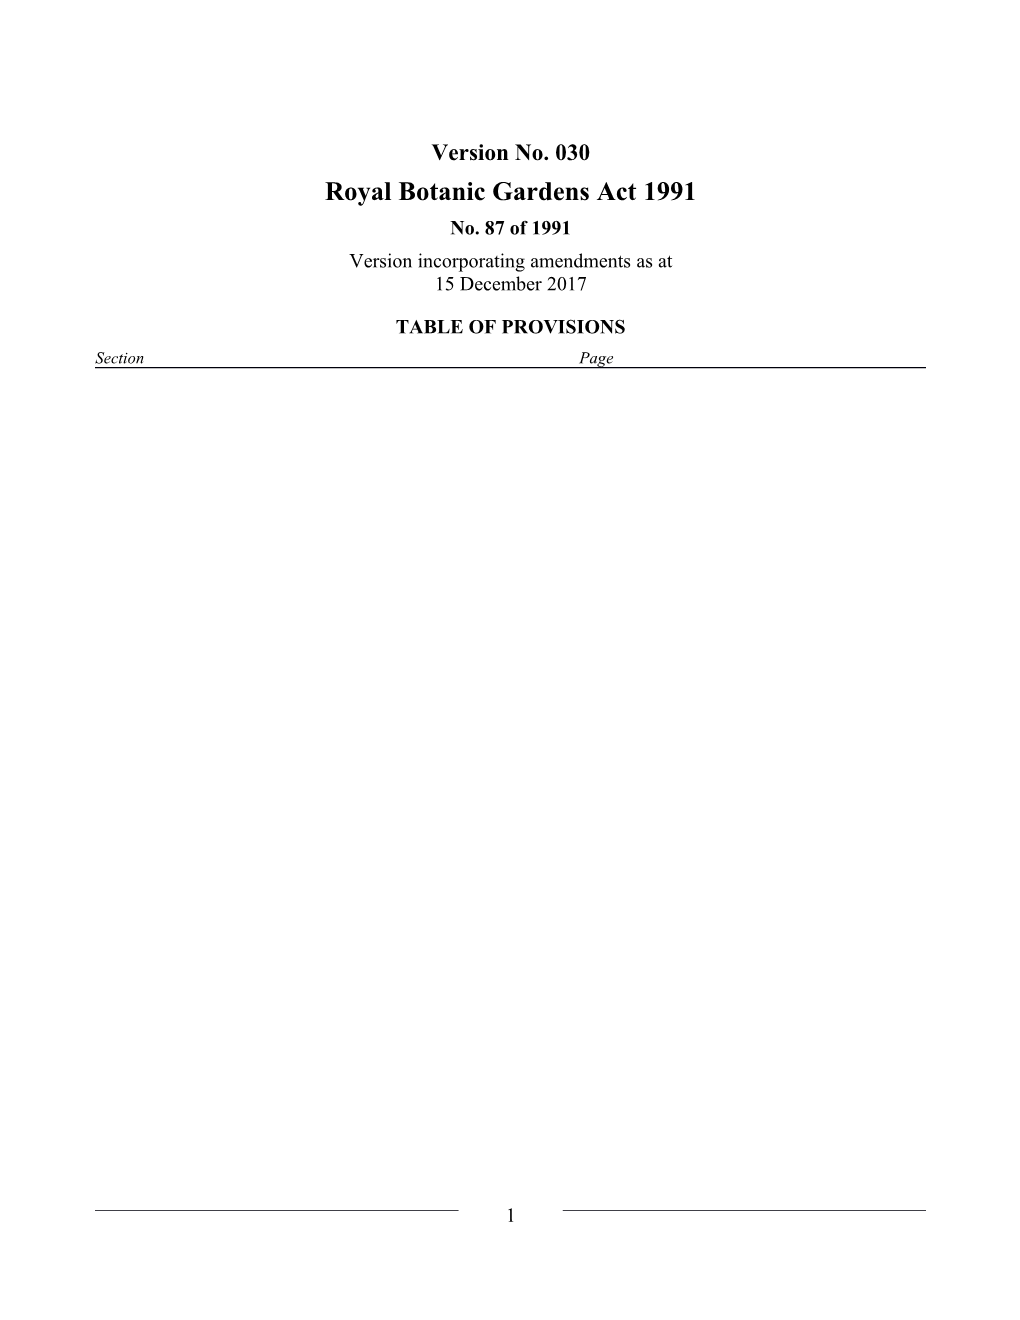 Royal Botanic Gardens Act 1991